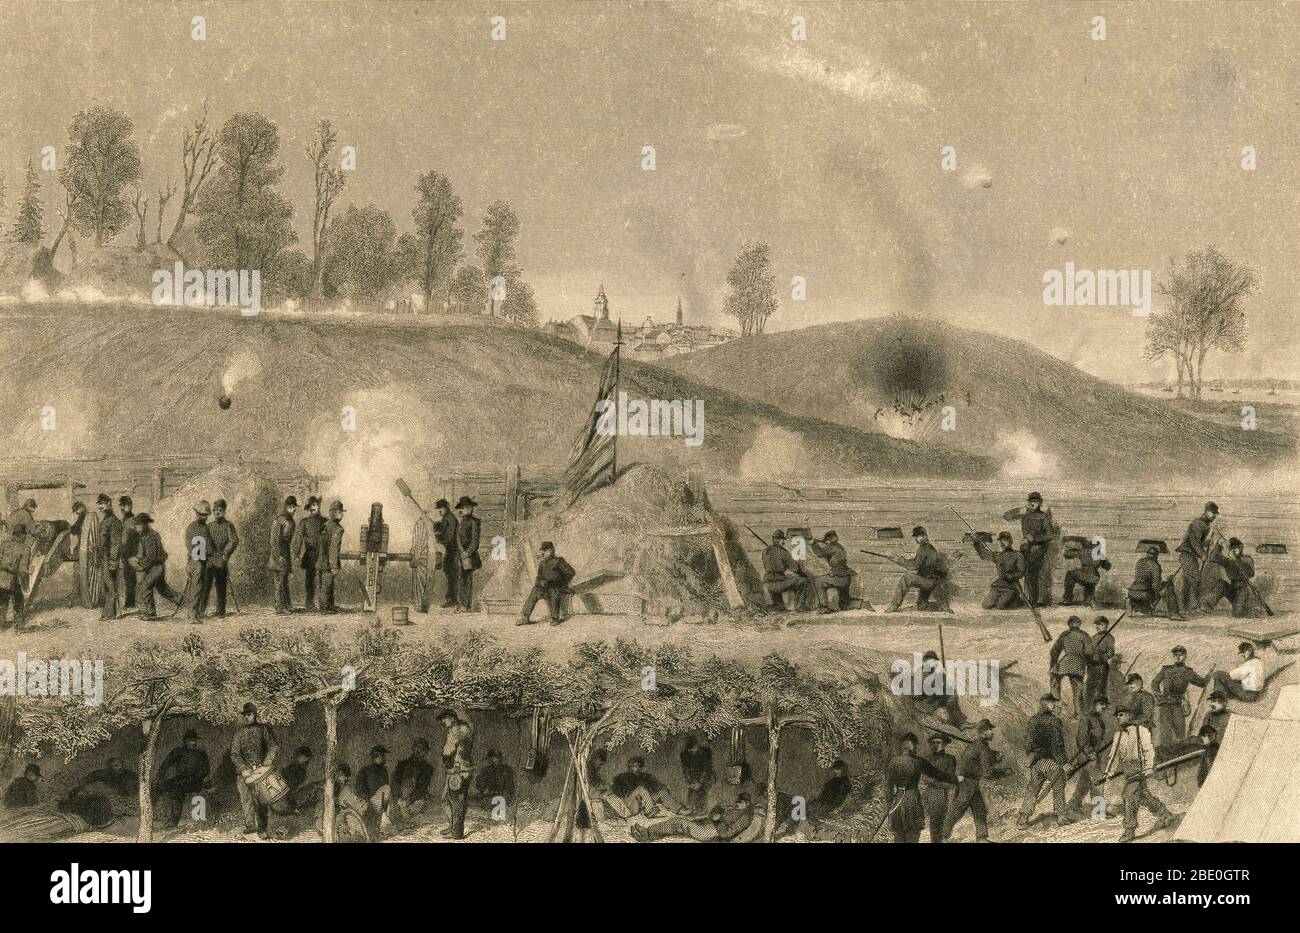 Le siège de Vicksburg en 1863 fut le point culminant de la campagne de Vicksburg et un tournant clé de la guerre civile américaine. Les Confédérations avaient le contrôle de la ville forteresse de Vicksburg, faisant de celle-ci une barrière du fleuve Mississippi pour l'Union. Le major de l'Union Ulysses S. Grant a pris le contrôle du fleuve Mississippi en lançant une attaque contre l'armée confédérée du lieutenant-général John C. Pemberton à Vicksburg. Après plus d'un mois d'attaques, les Confédérations se sont remises, divisant la Confédération en deux. Banque D'Images